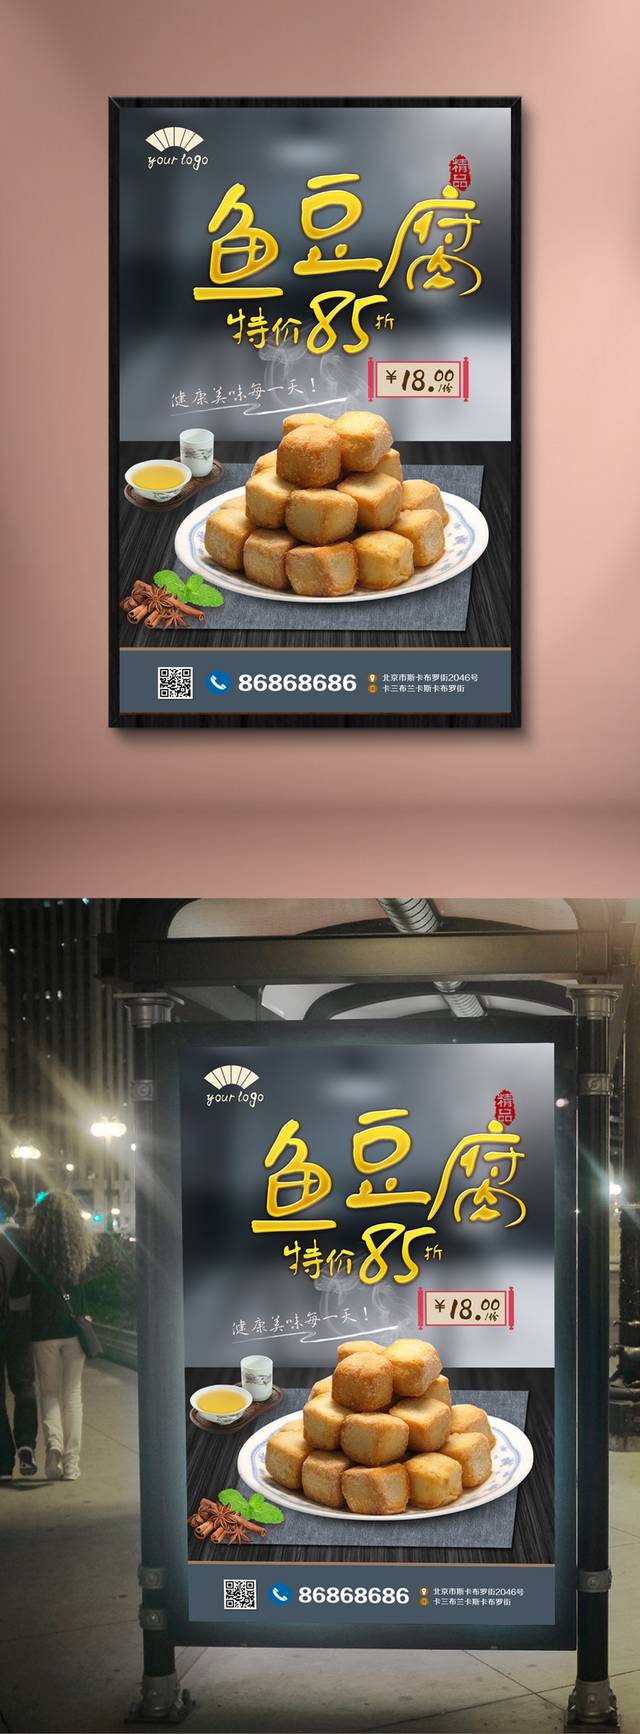 高清鱼豆腐美食海报设计